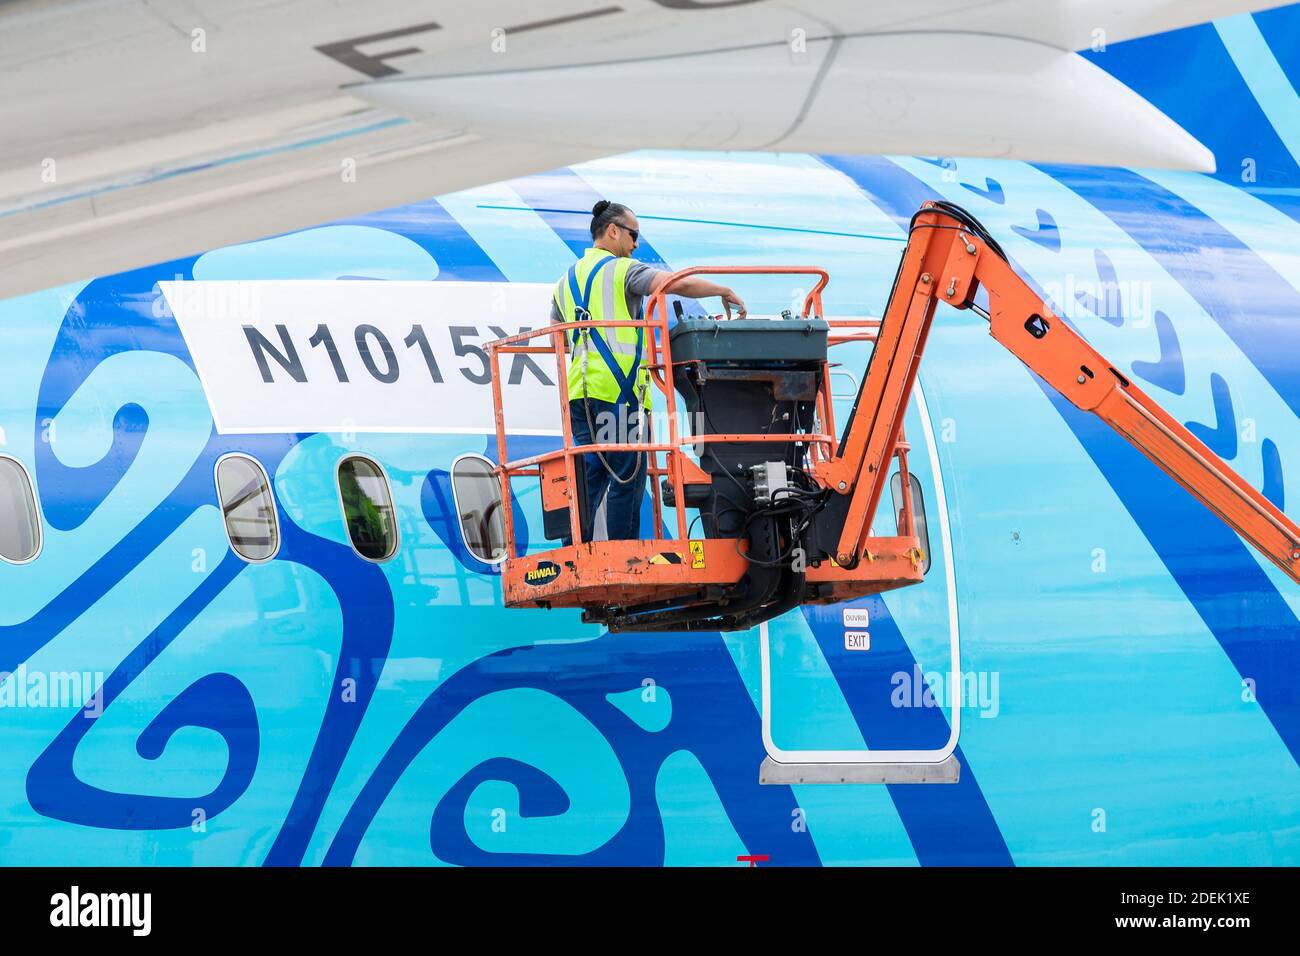 Neue boeing 787-900 für Air Tahiti Nui, Lieferung in wenigen Tagen, taufte: Bora Bora auf der internationalen Flugschau 53e am 16. Juni 2019 im Flughafen Bourget bei Paris, Frankreich. Foto von Thomas Arnoux/ABACAPRESS.COM Stockfoto